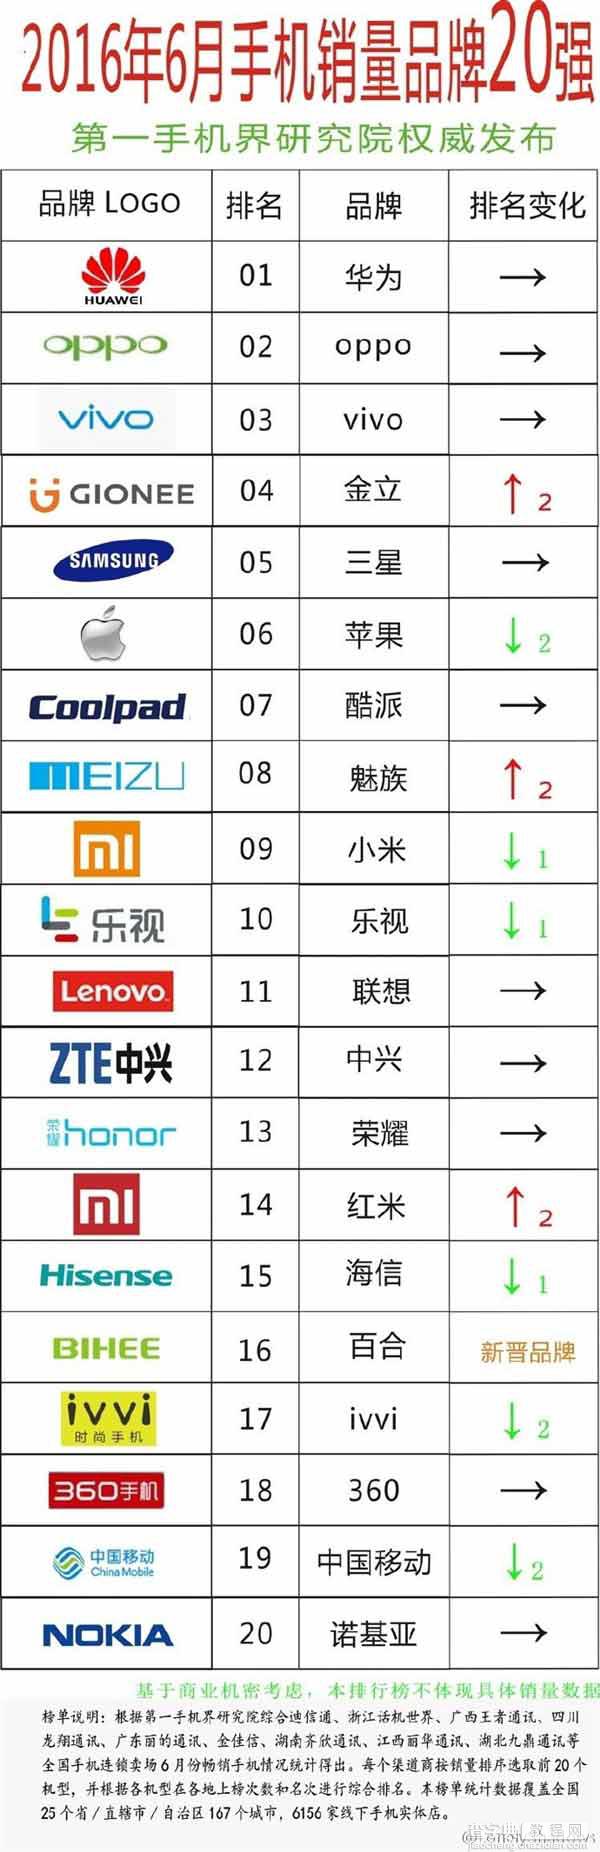 2016年6月线下手机销量品牌20强排行榜:华为第1、小米第91